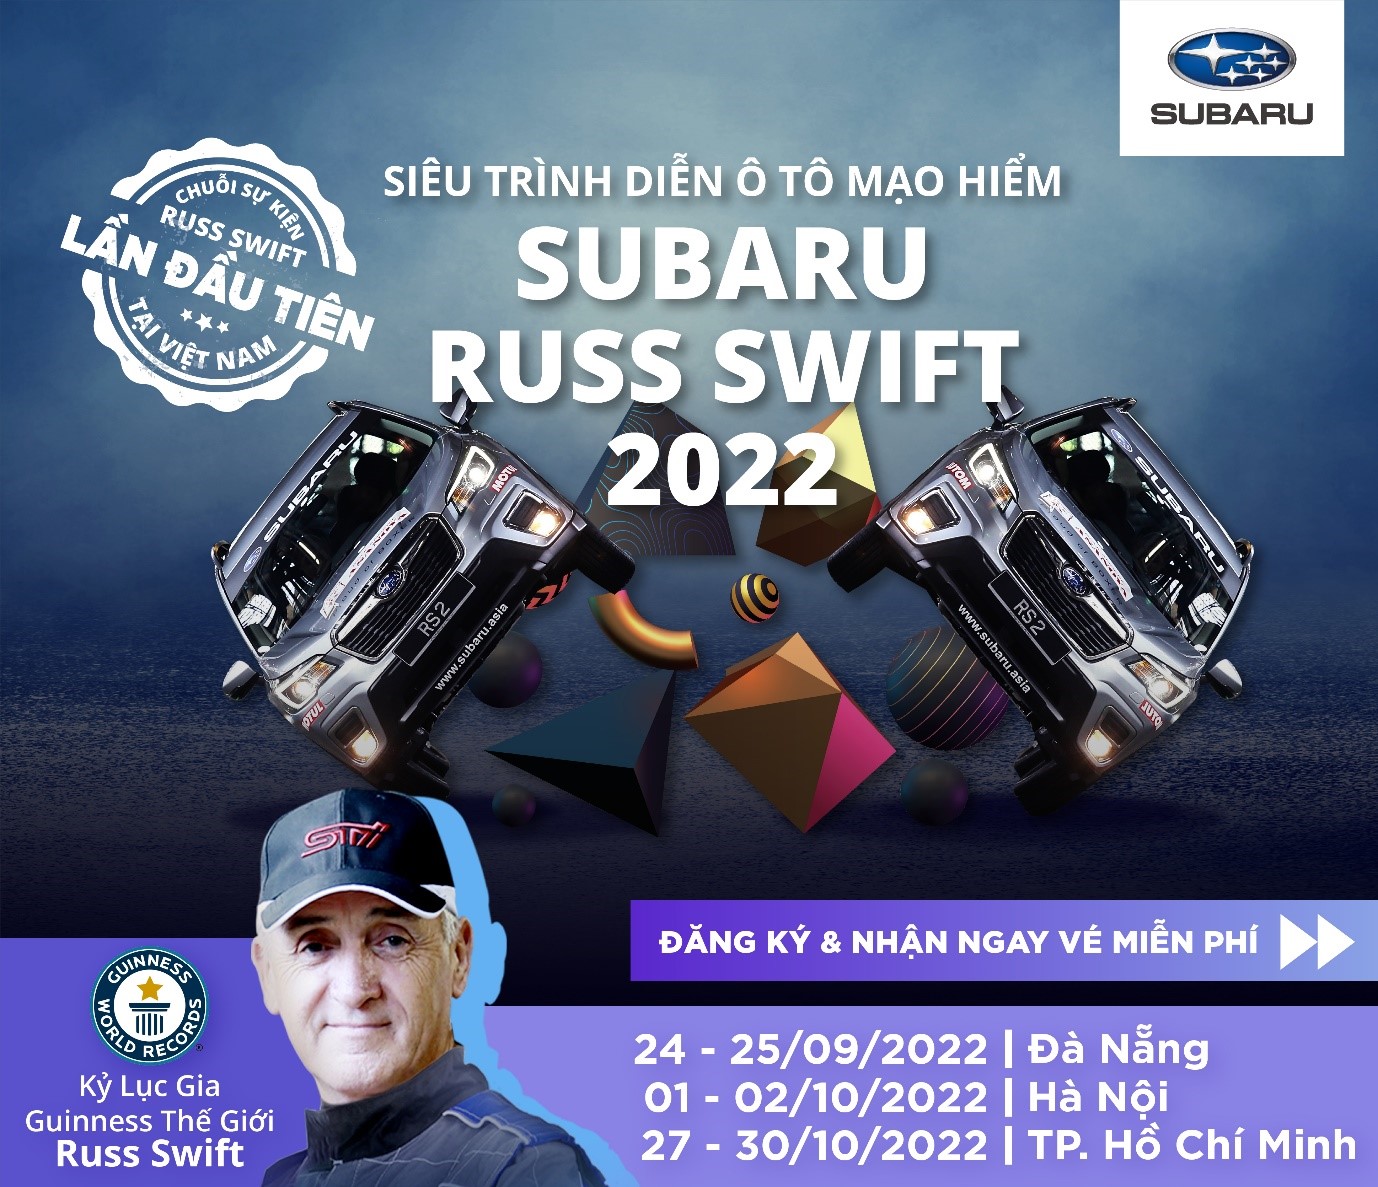 Lịch trình cụ thể của Subaru Russ Swift Stunt Show 2022.